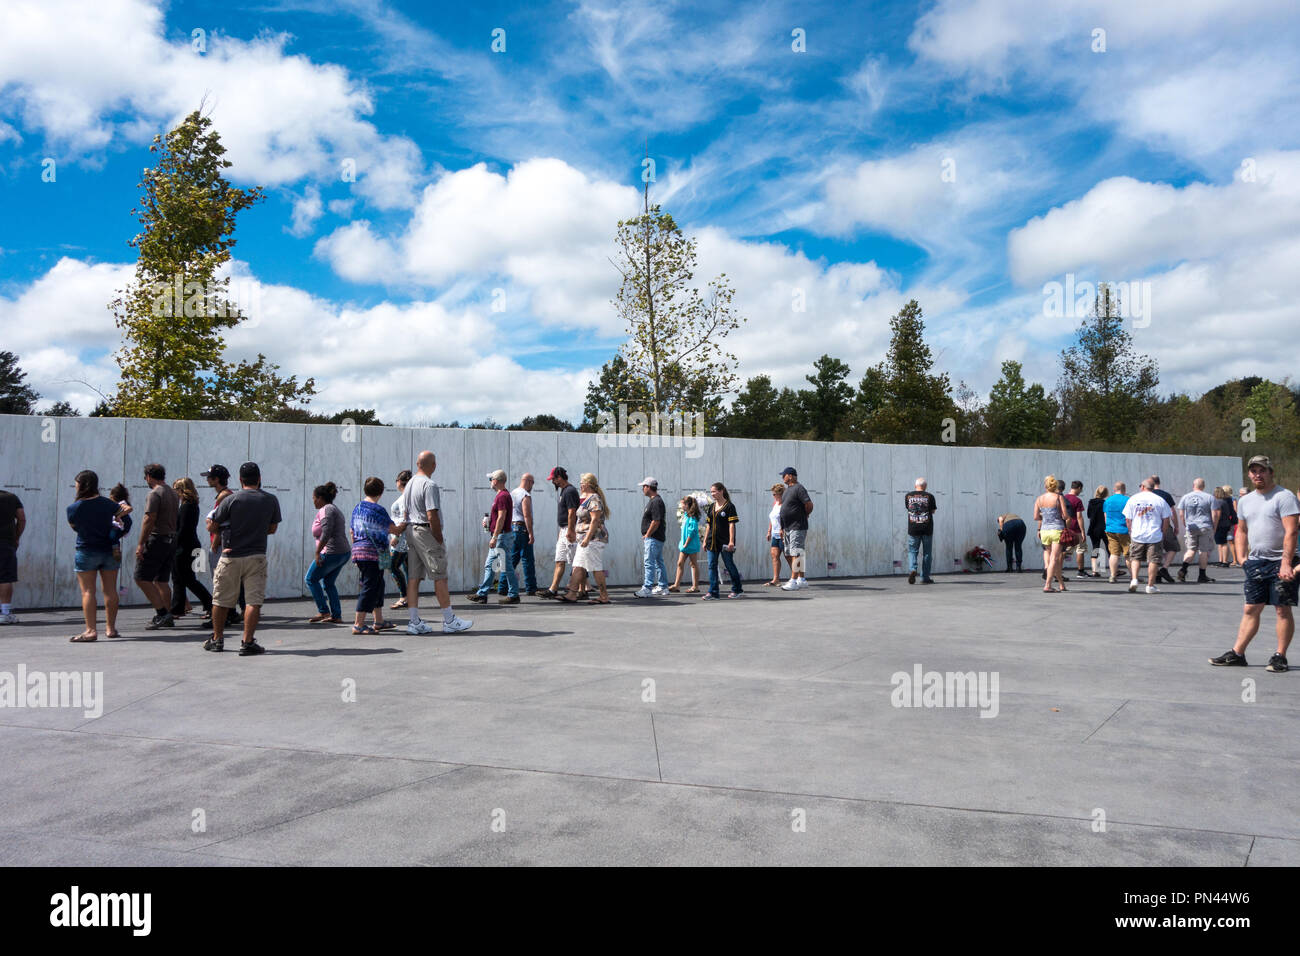 Visitatori guardano il muro dei nomi che si trova alla fine del Memorial Plaza al volo 93 National Memorial, Shanksville, Somerset County, Pennsylvania, STATI UNITI D'AMERICA Foto Stock